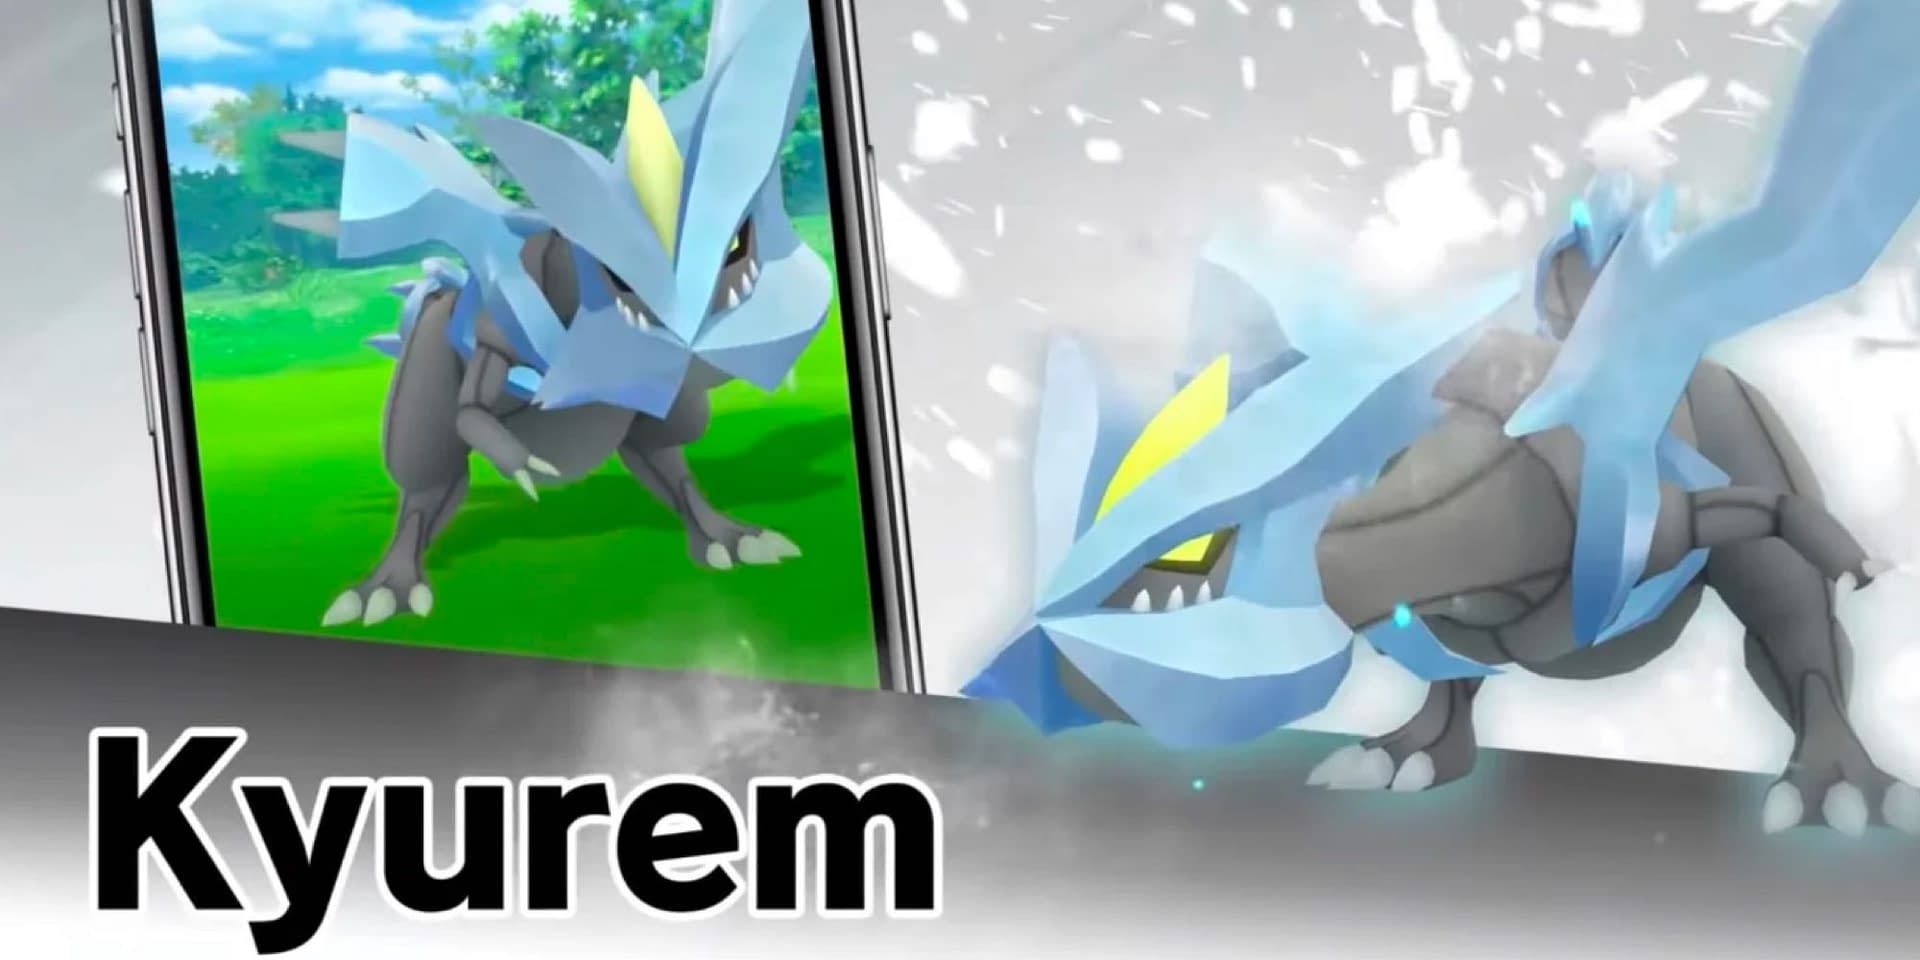 Kyurem Raid Guide For Pokémon GO Players December 2022